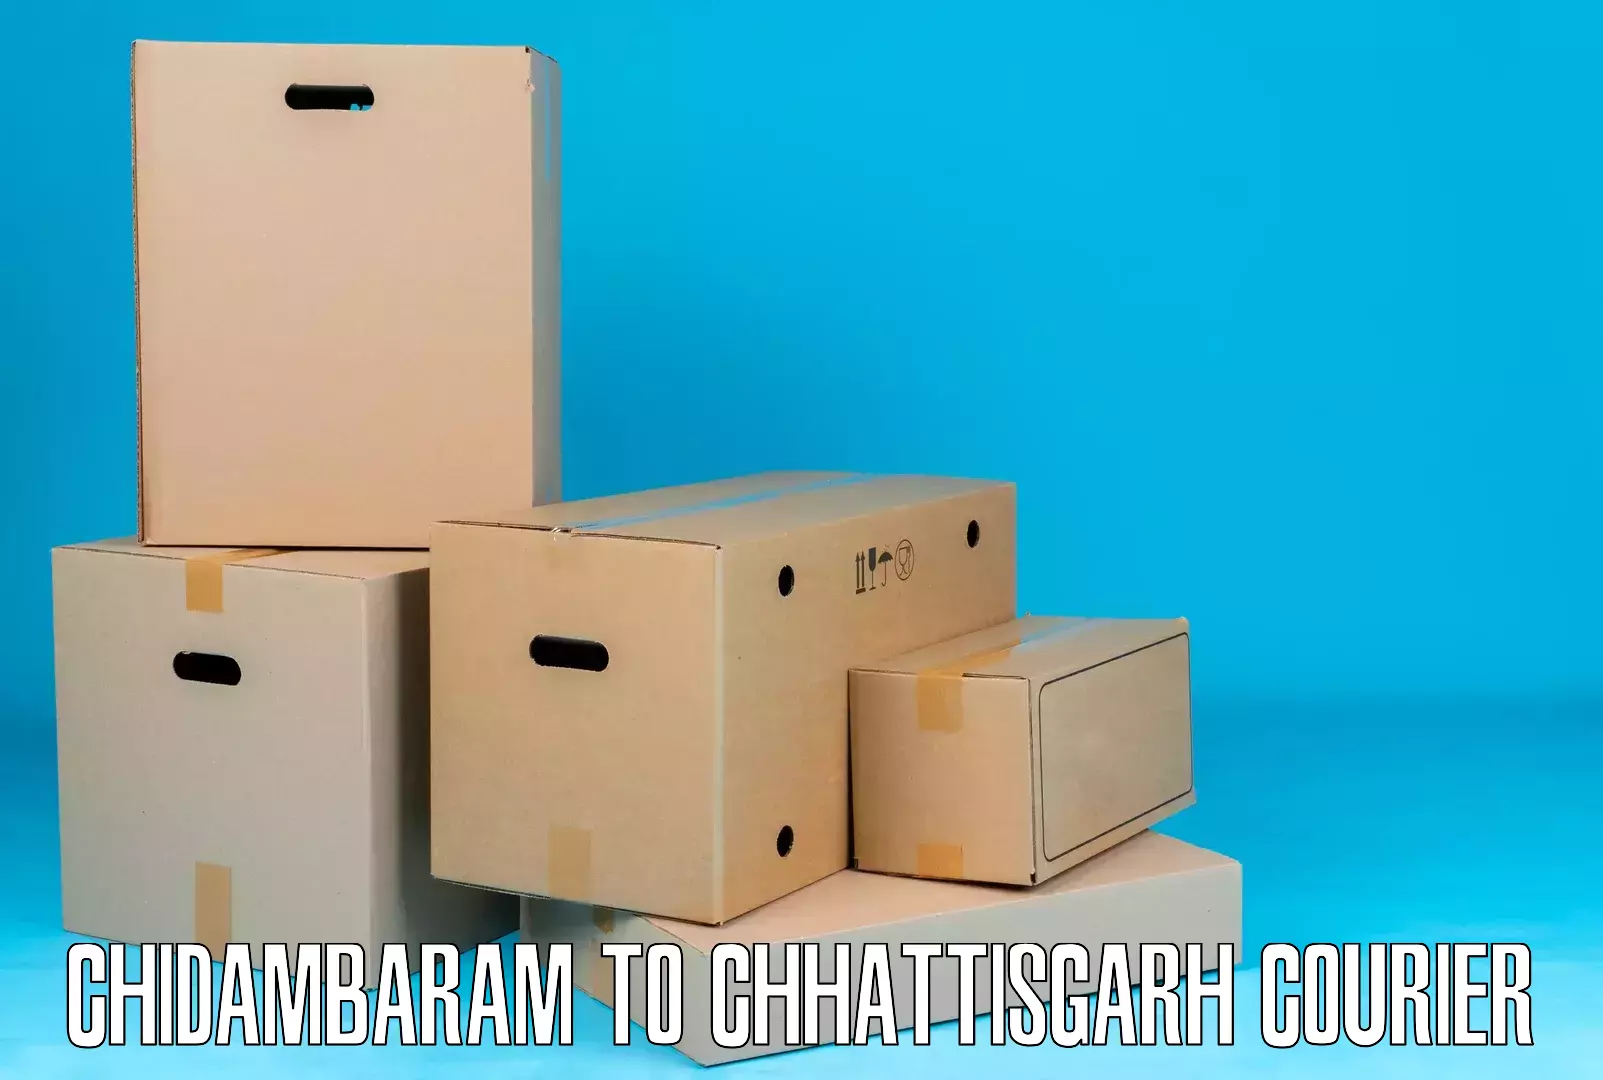 Special handling courier Chidambaram to Saraipali